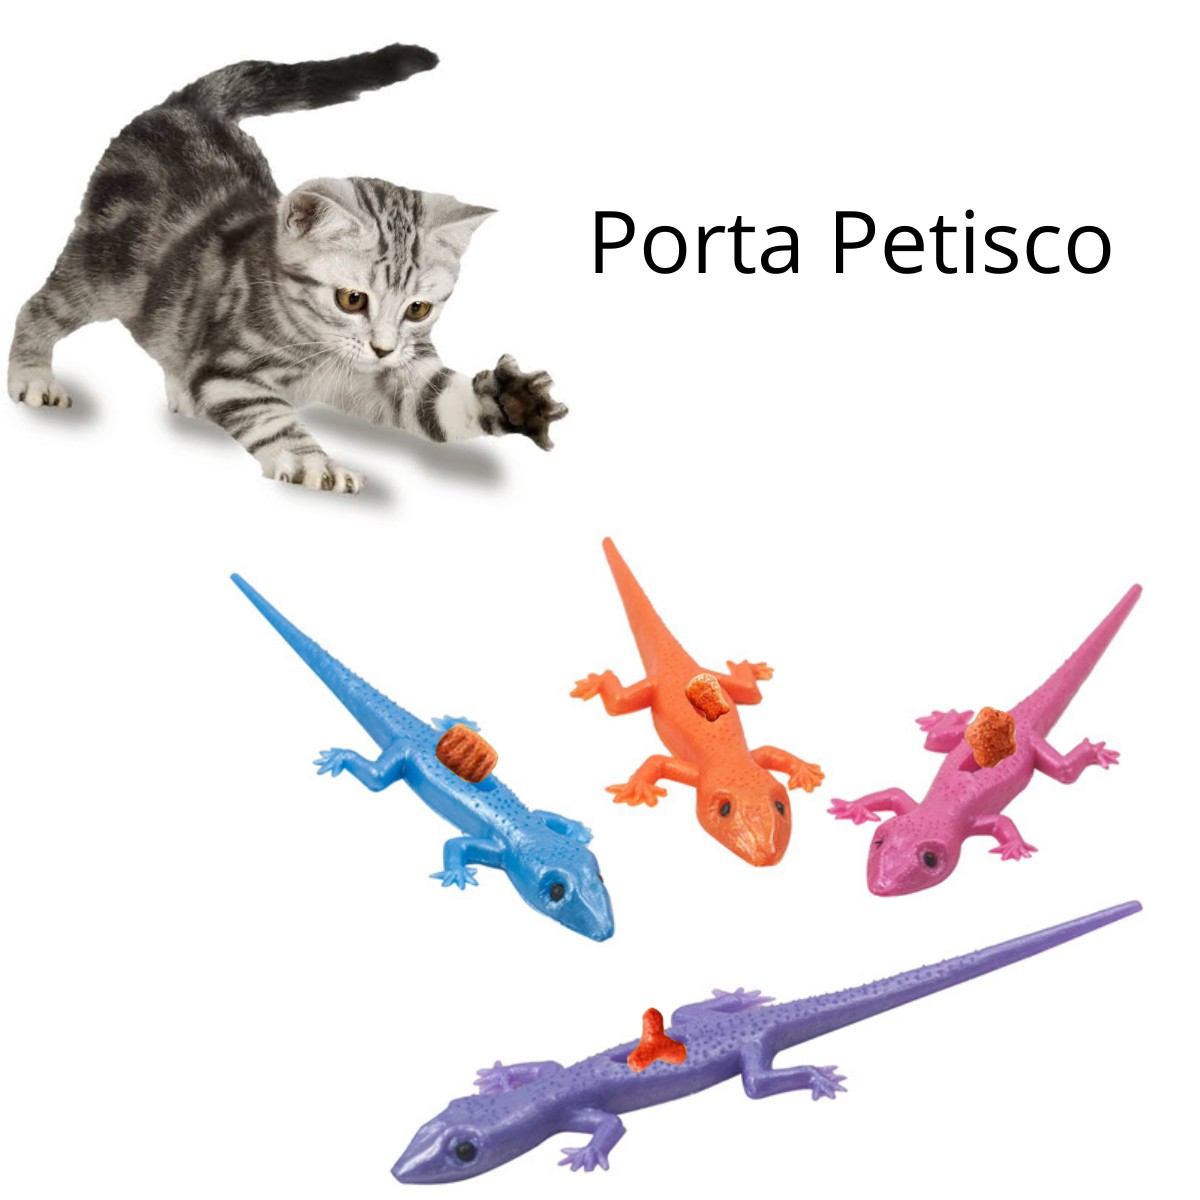 Naroote Caixa de jogo de gato, conjunto de moagem de garras, caixa de  quebra-cabeça divertida com vara de provocar gatos para brinquedo de animal  de